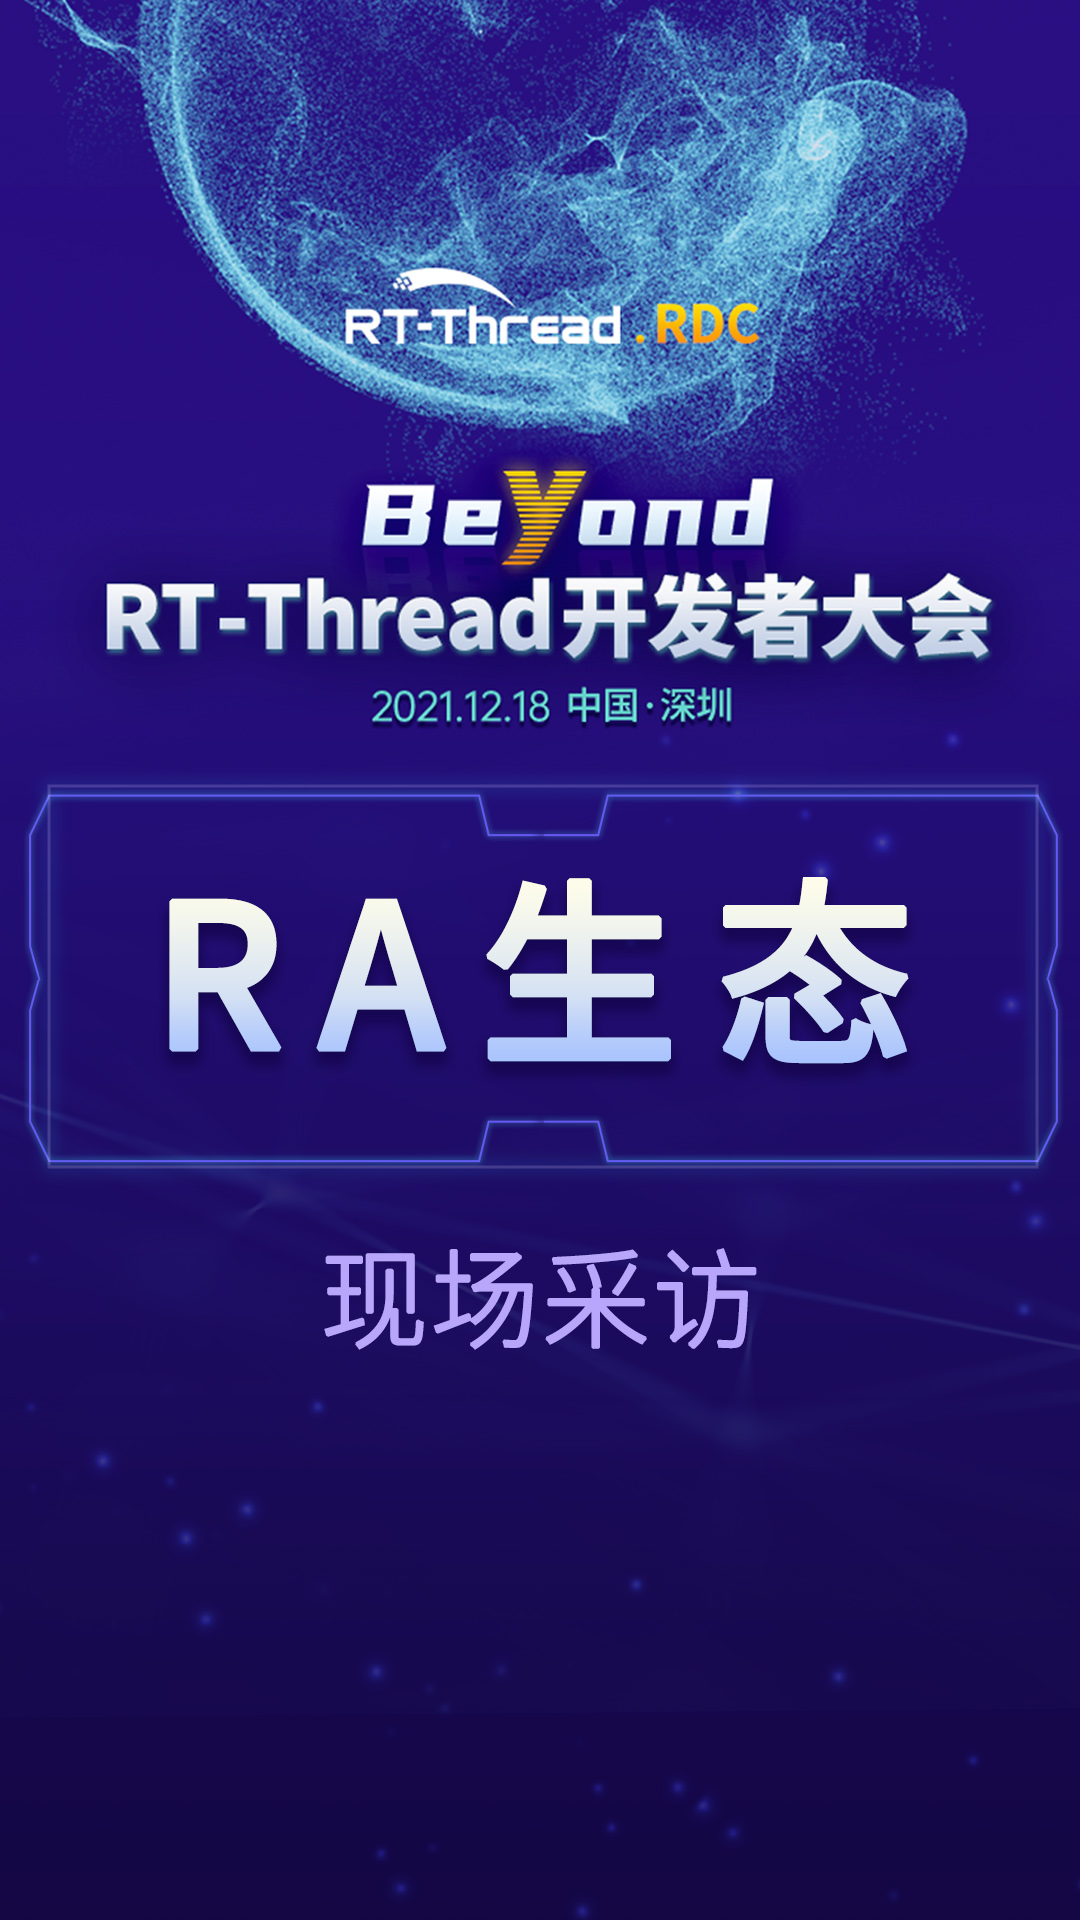 RT-Thread开发者大会-RA生态企业现场采访#嵌入式开发 